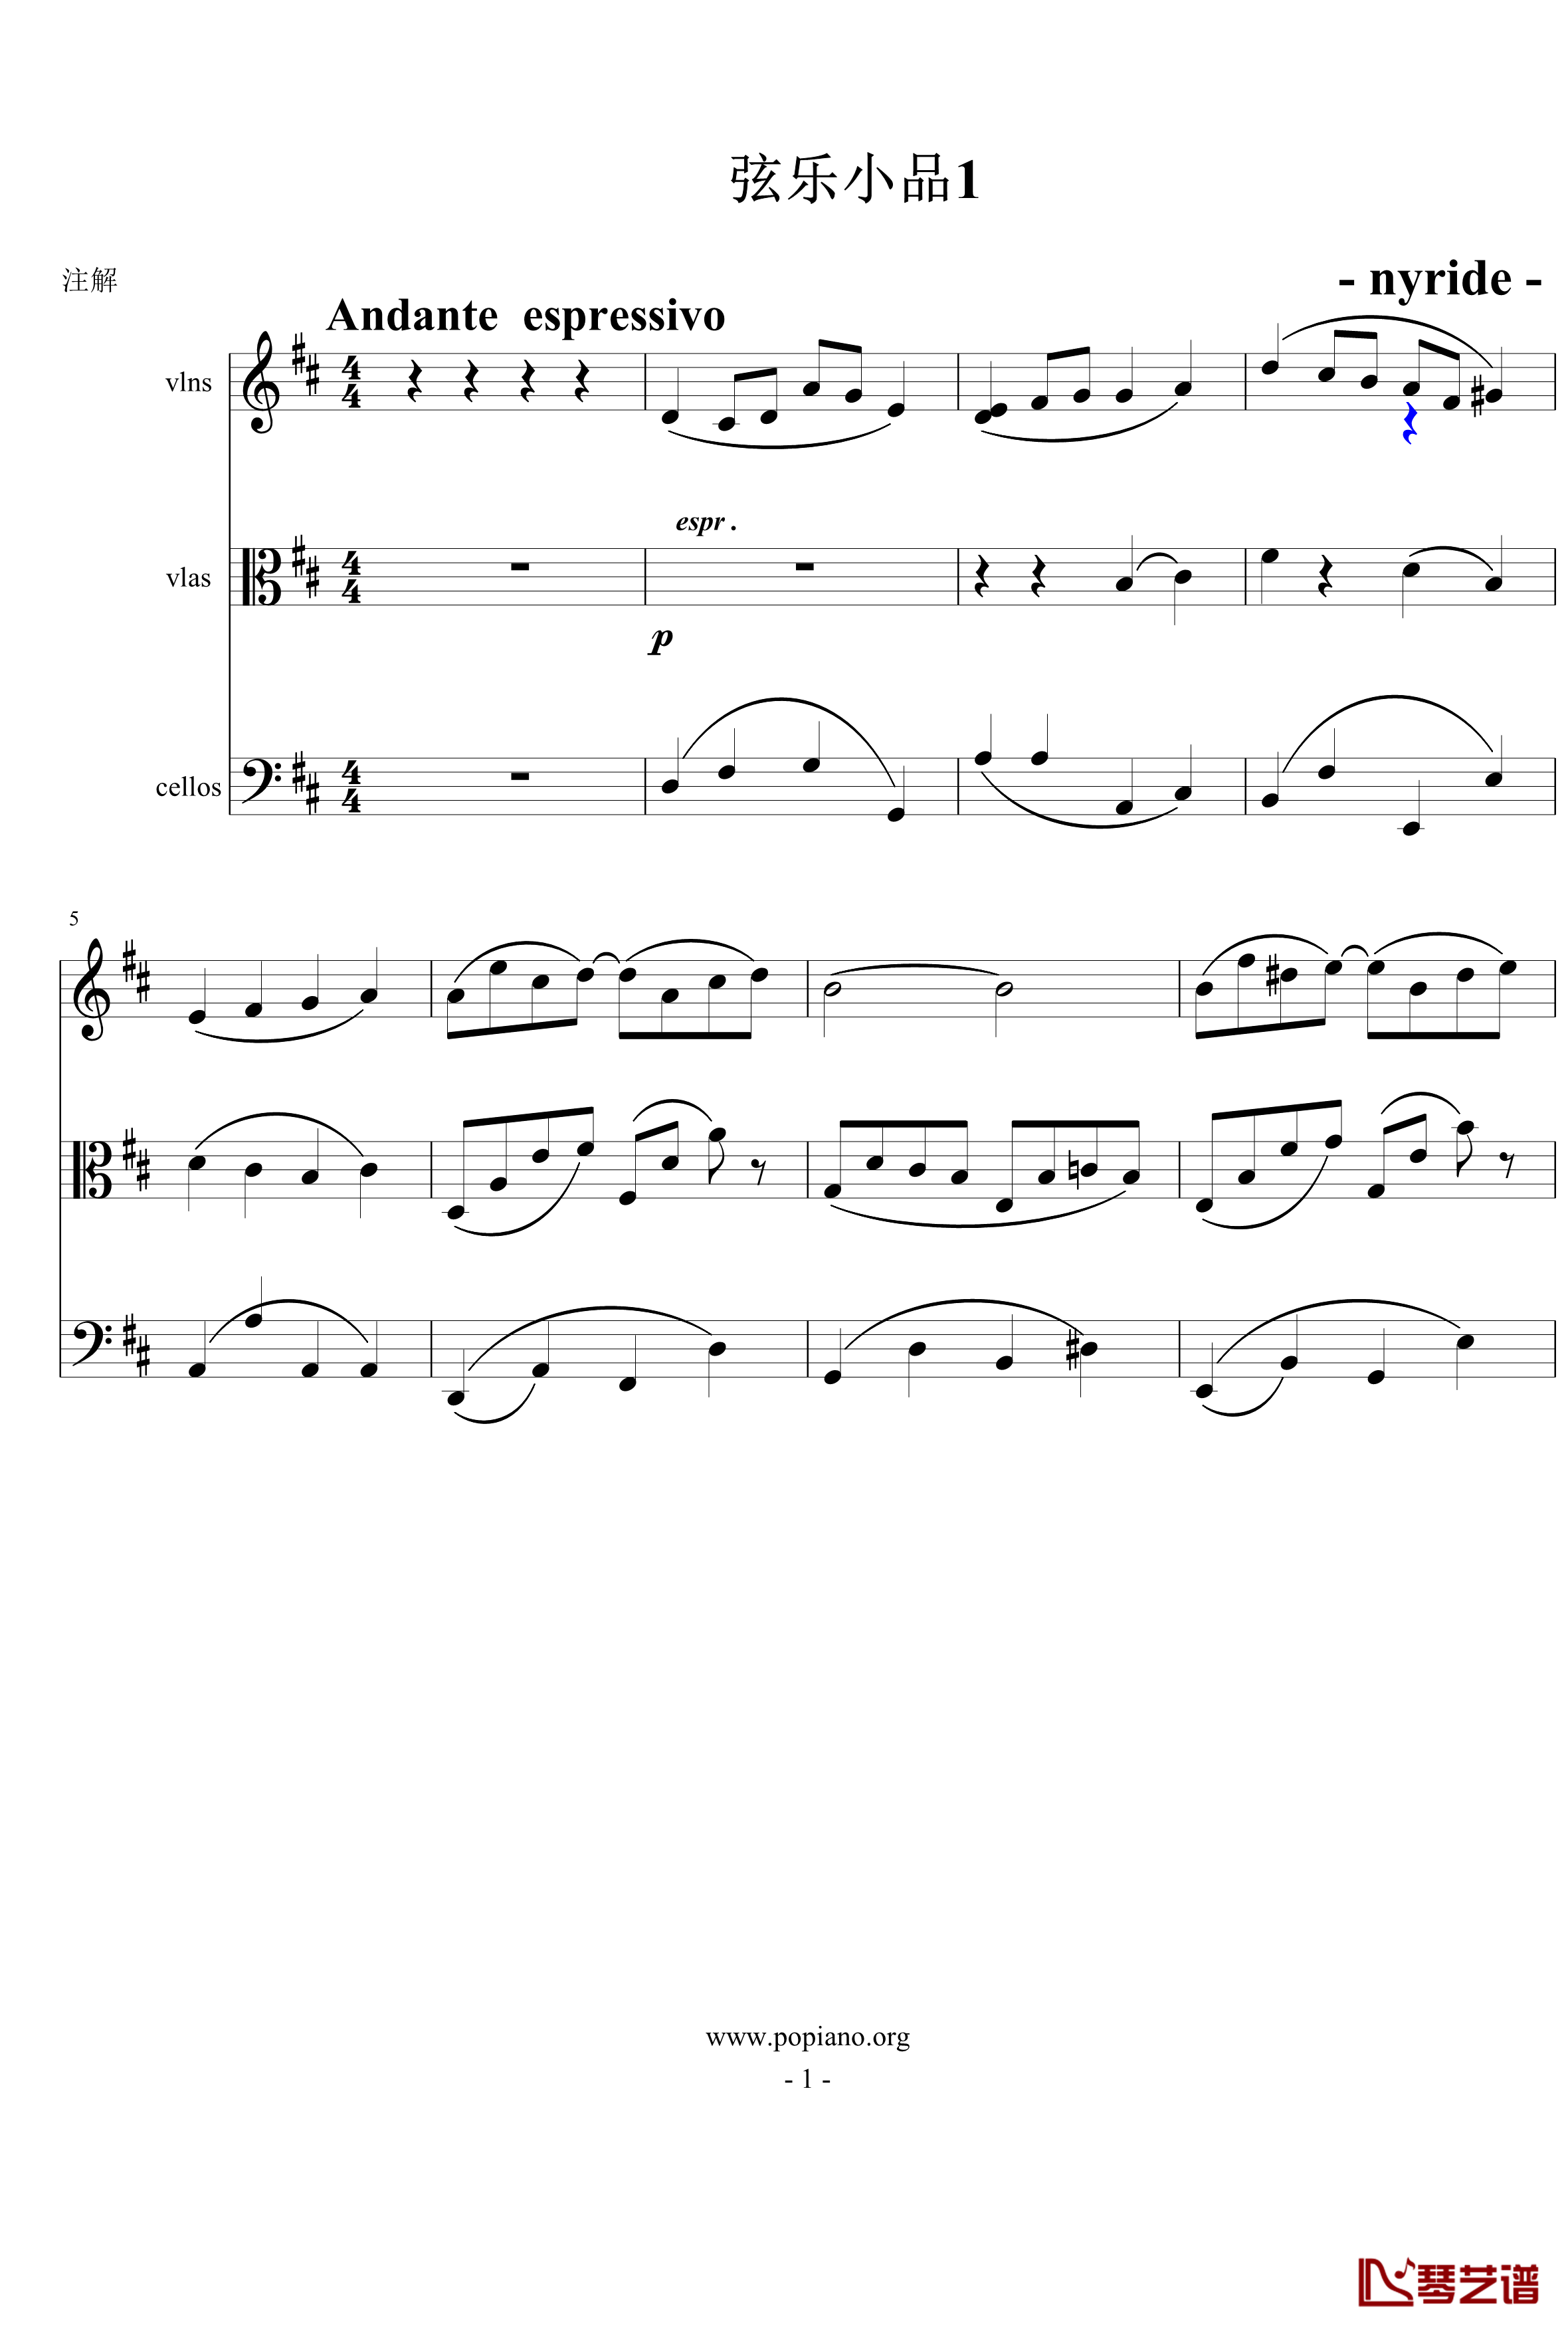 弦乐小品钢琴谱-nyride-D大调1